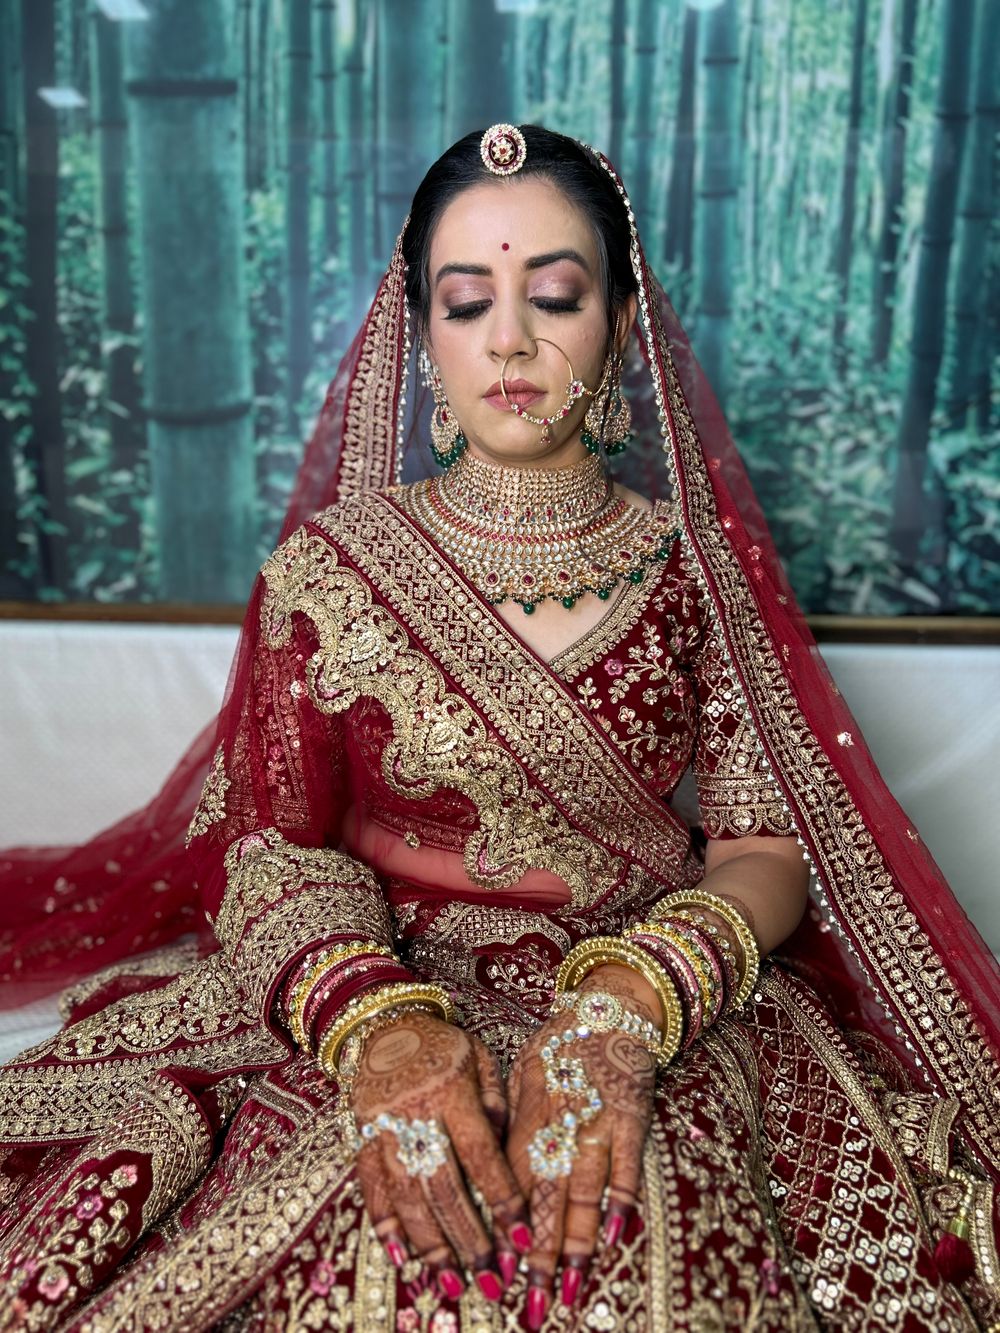 Photo From Roopal - By Jaipur Makeup Artist Lakshiyata